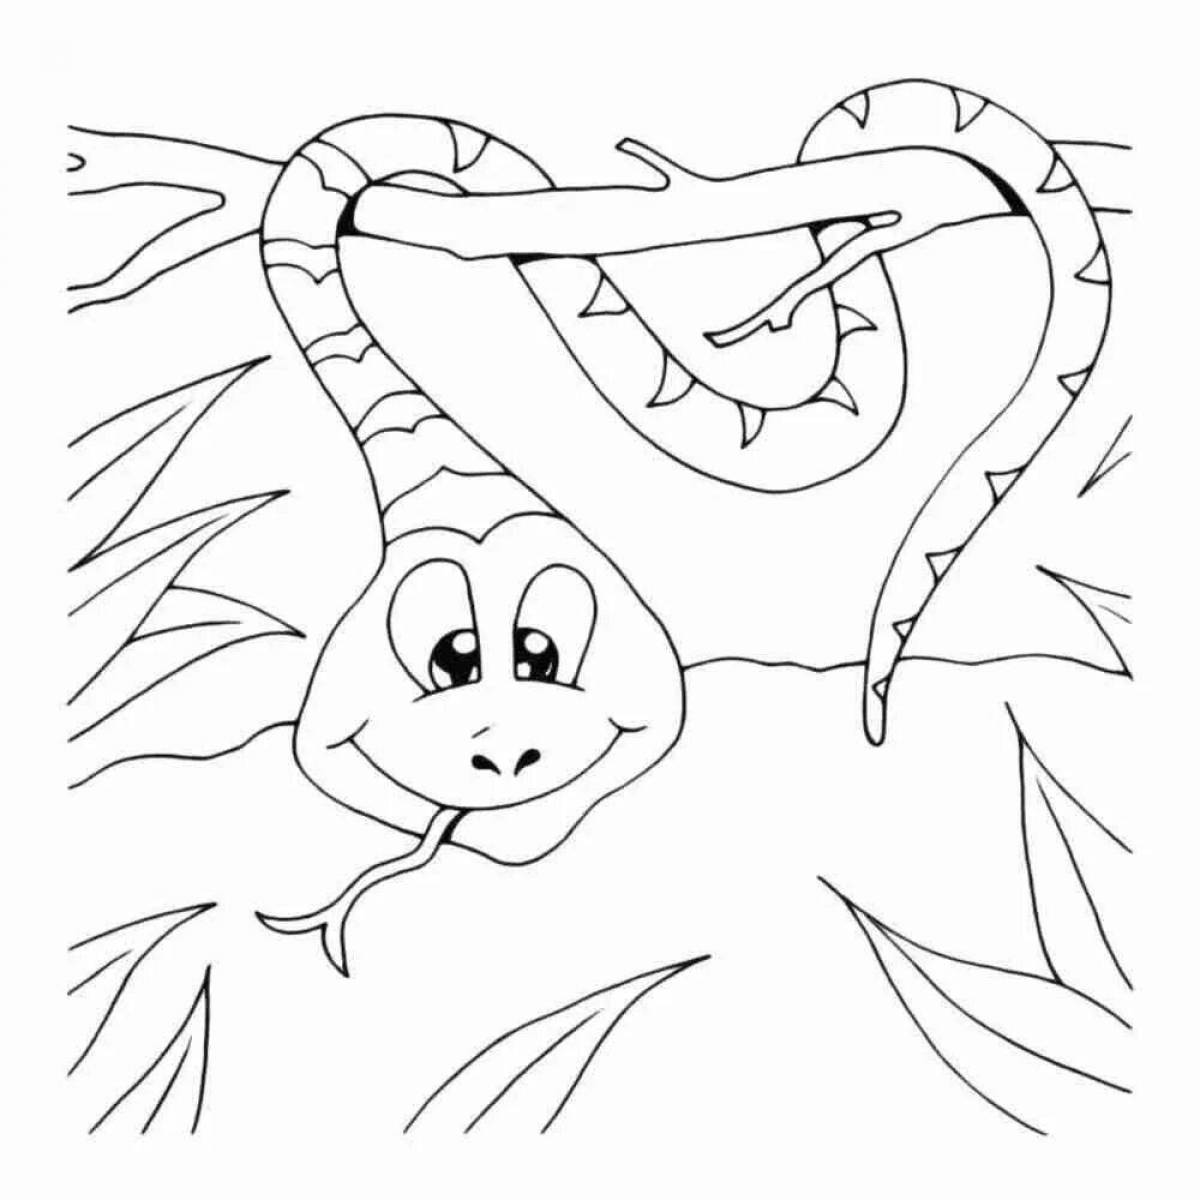 Красочная страница раскраски змей для детей 5-6 лет